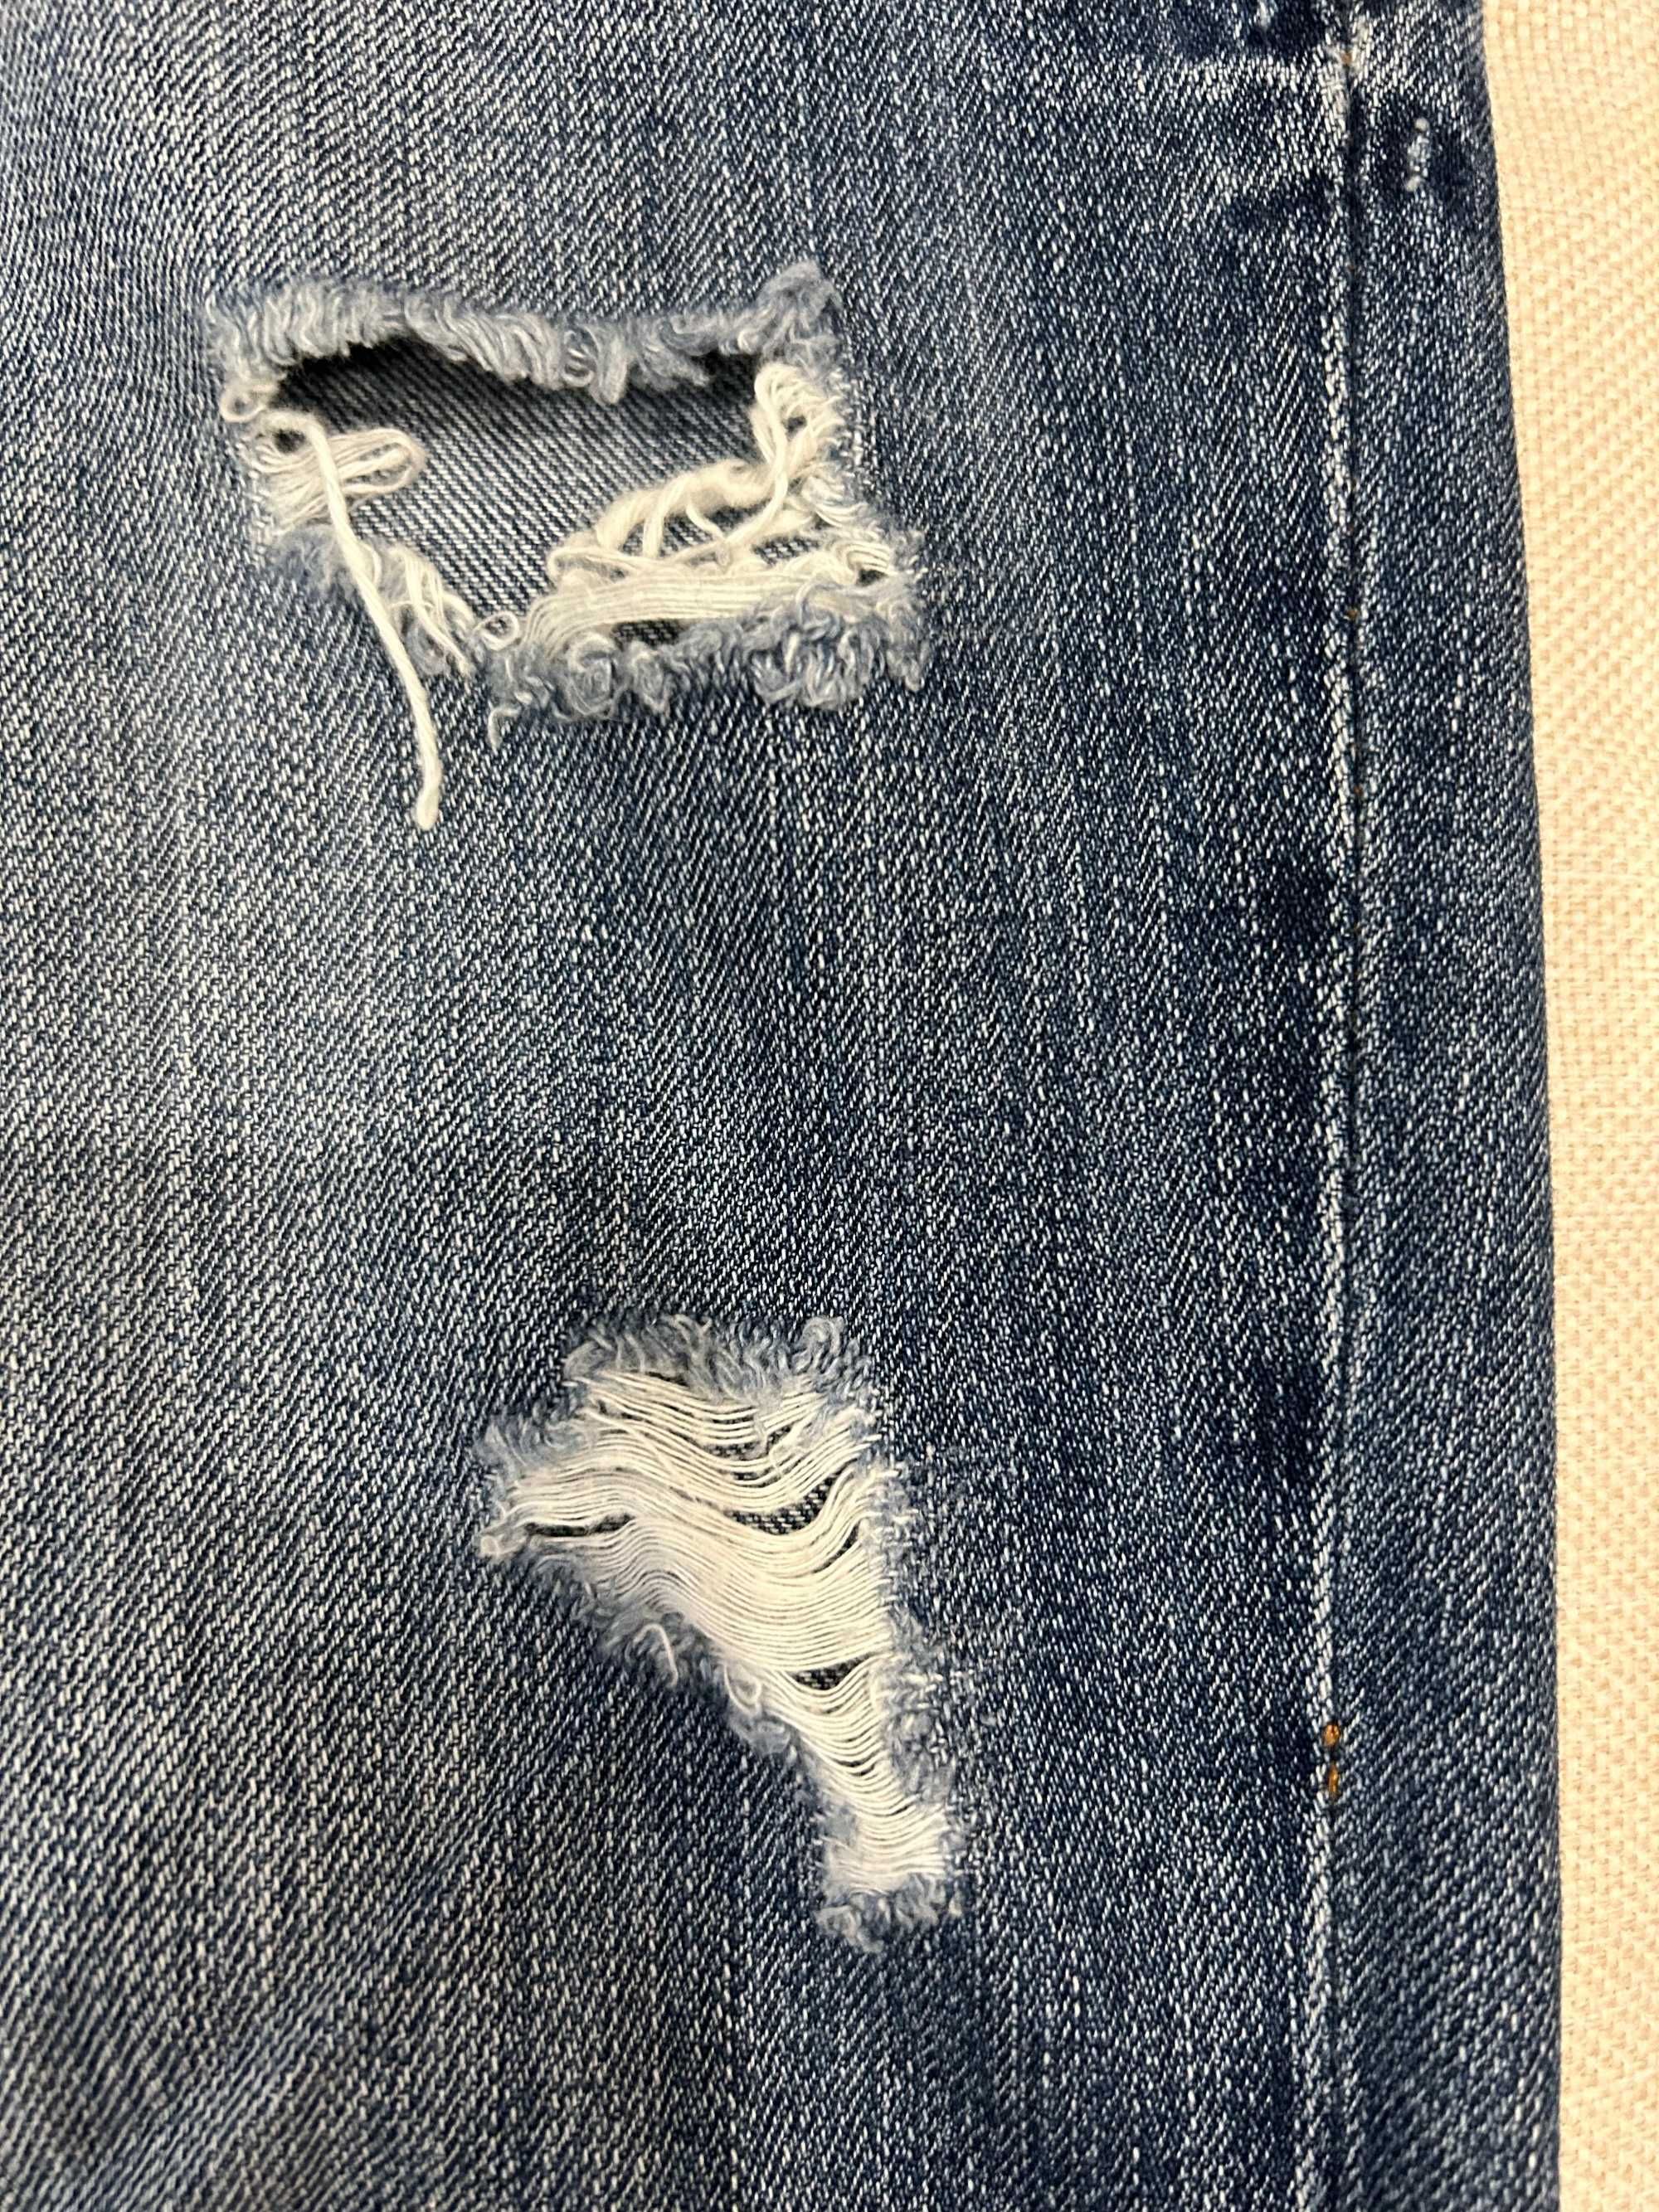 Damskie jeansy z przetarciami